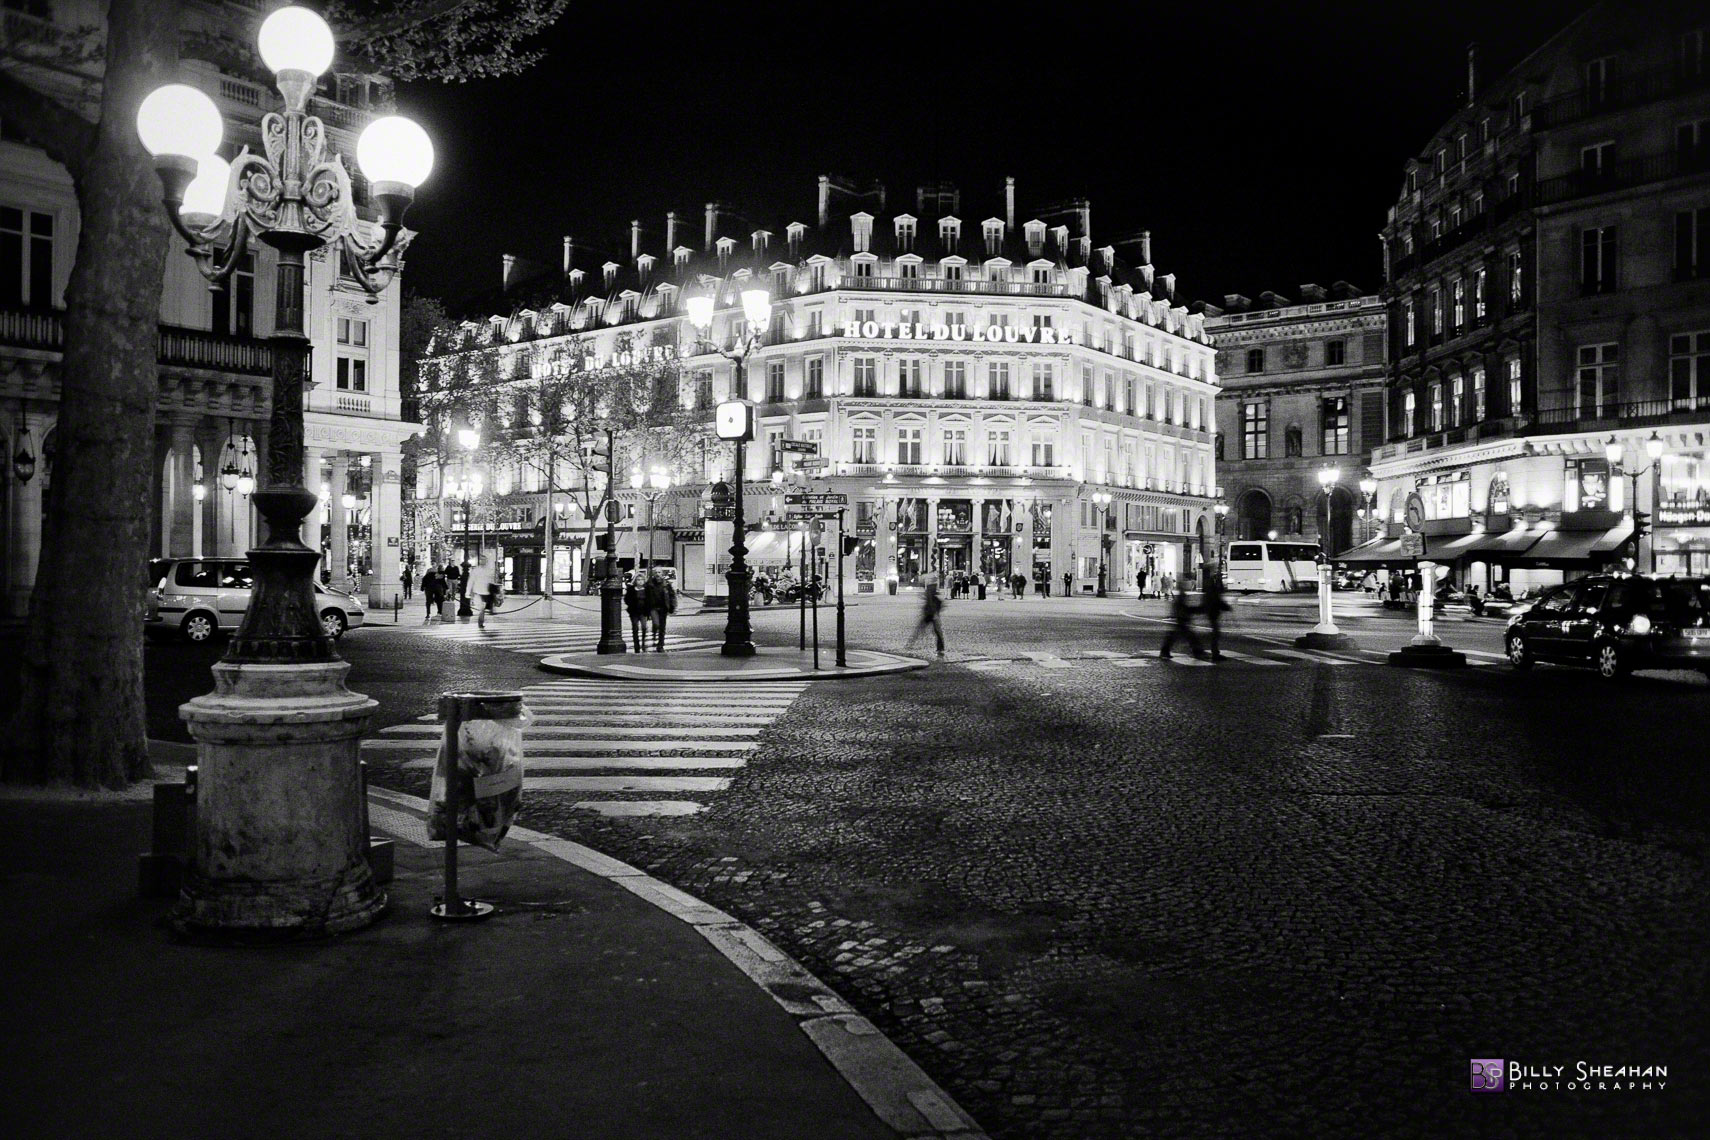 L_Hotel_du_Louvre__Paris__France_Paris2008_24Apr2008_0713_D